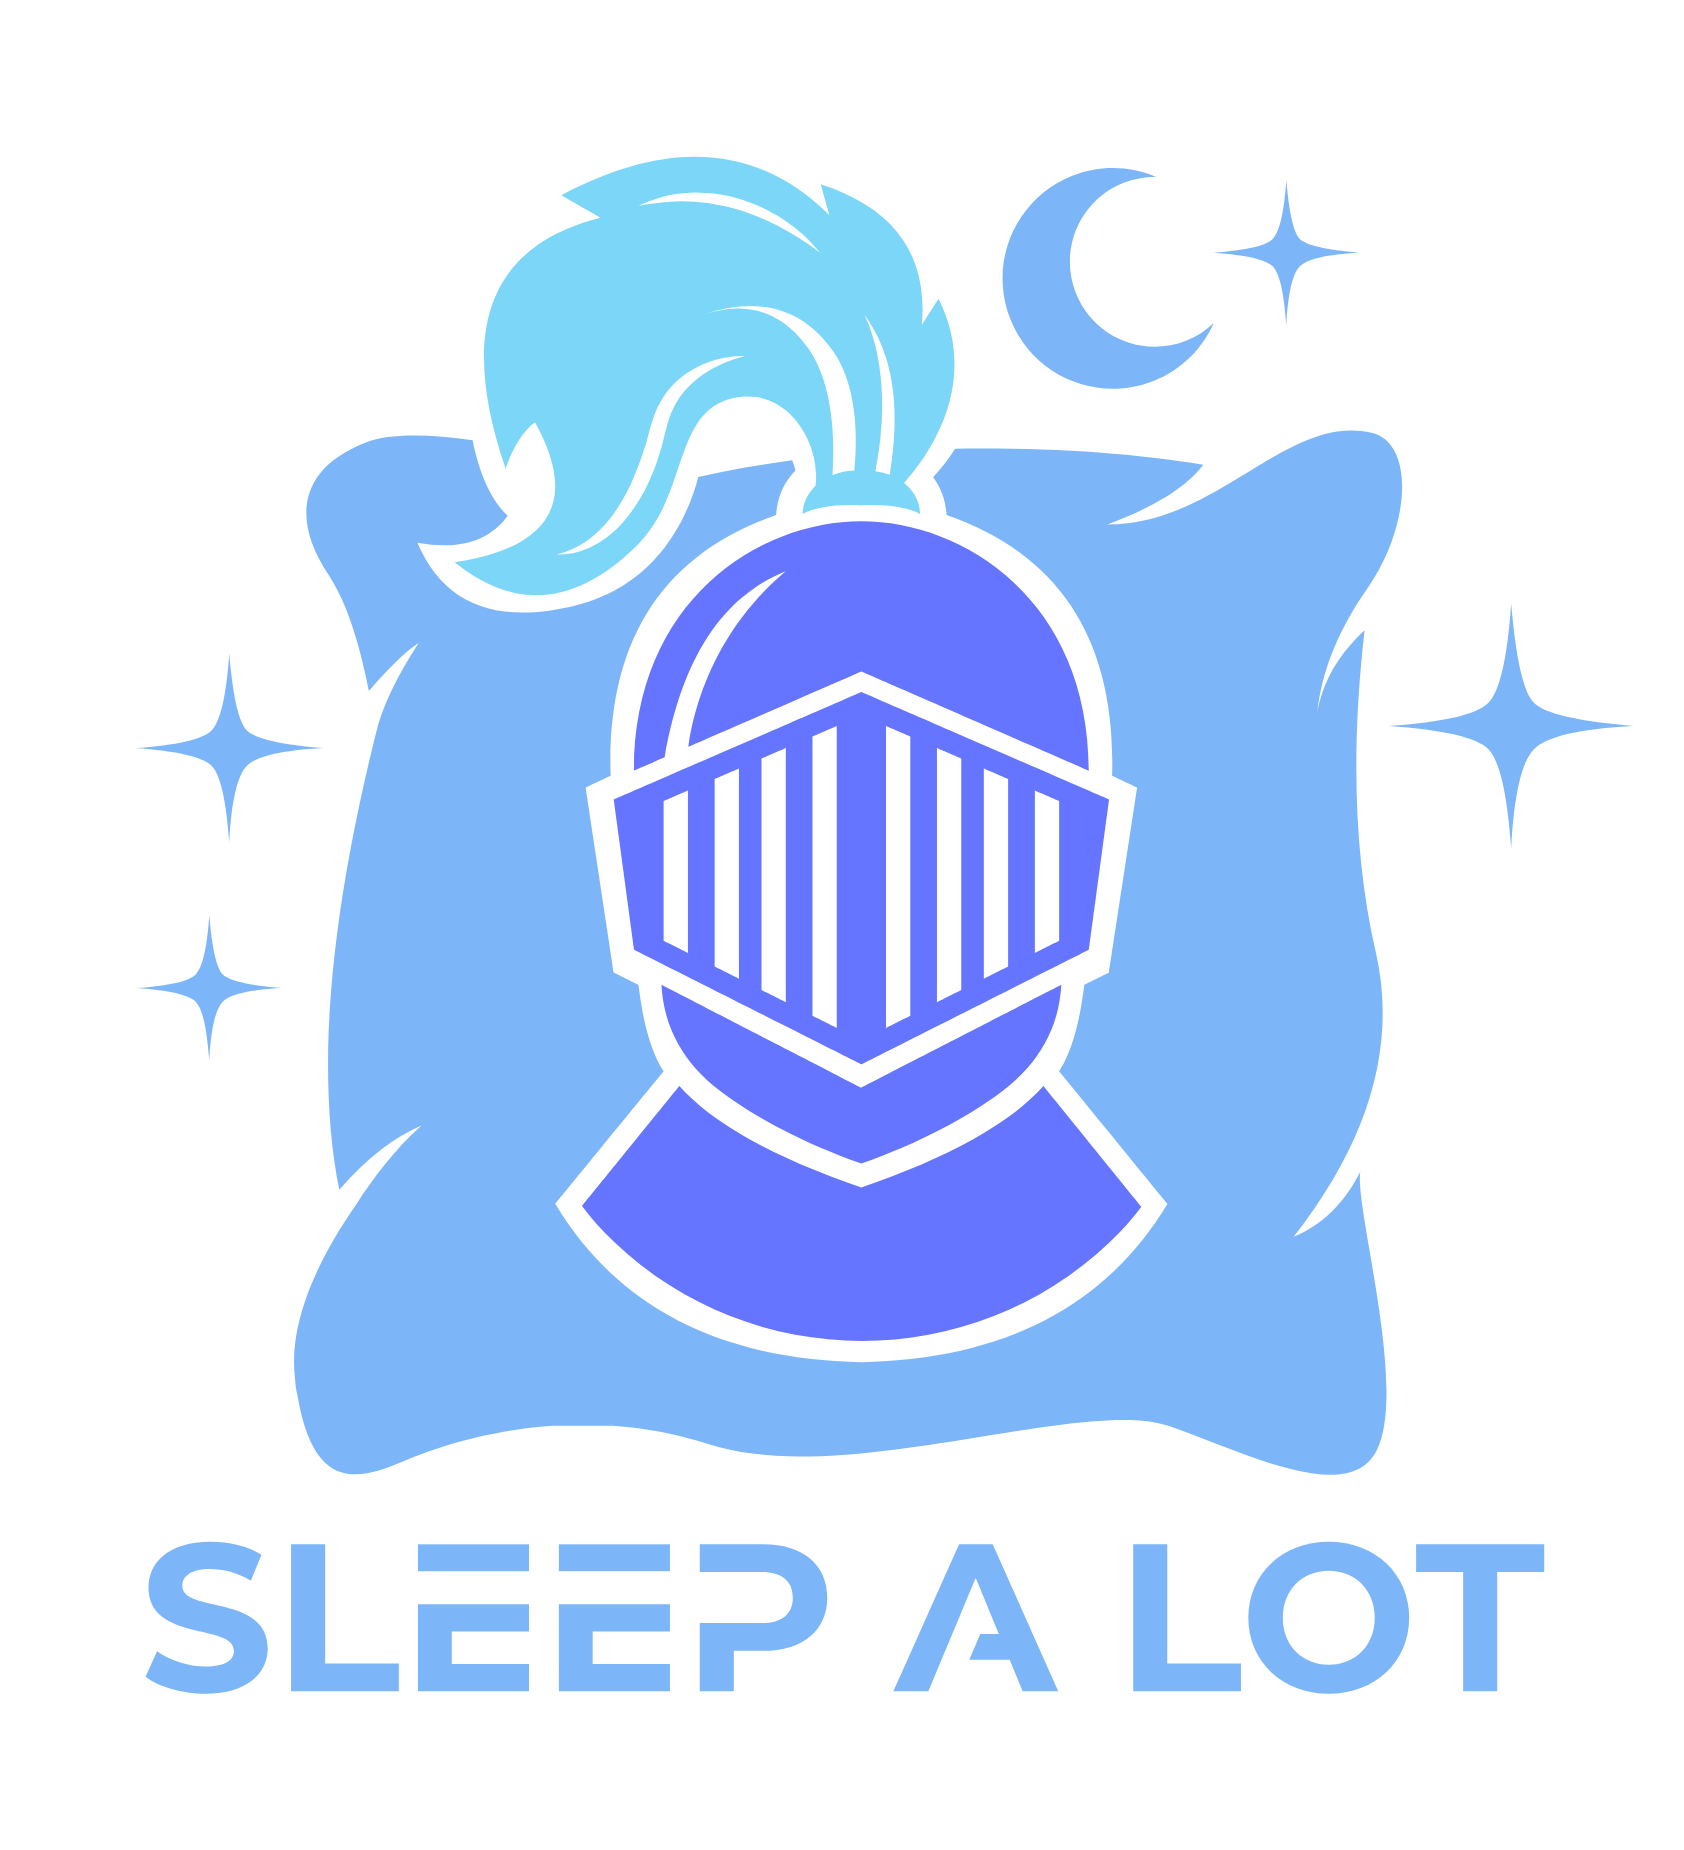 Sleep a lot